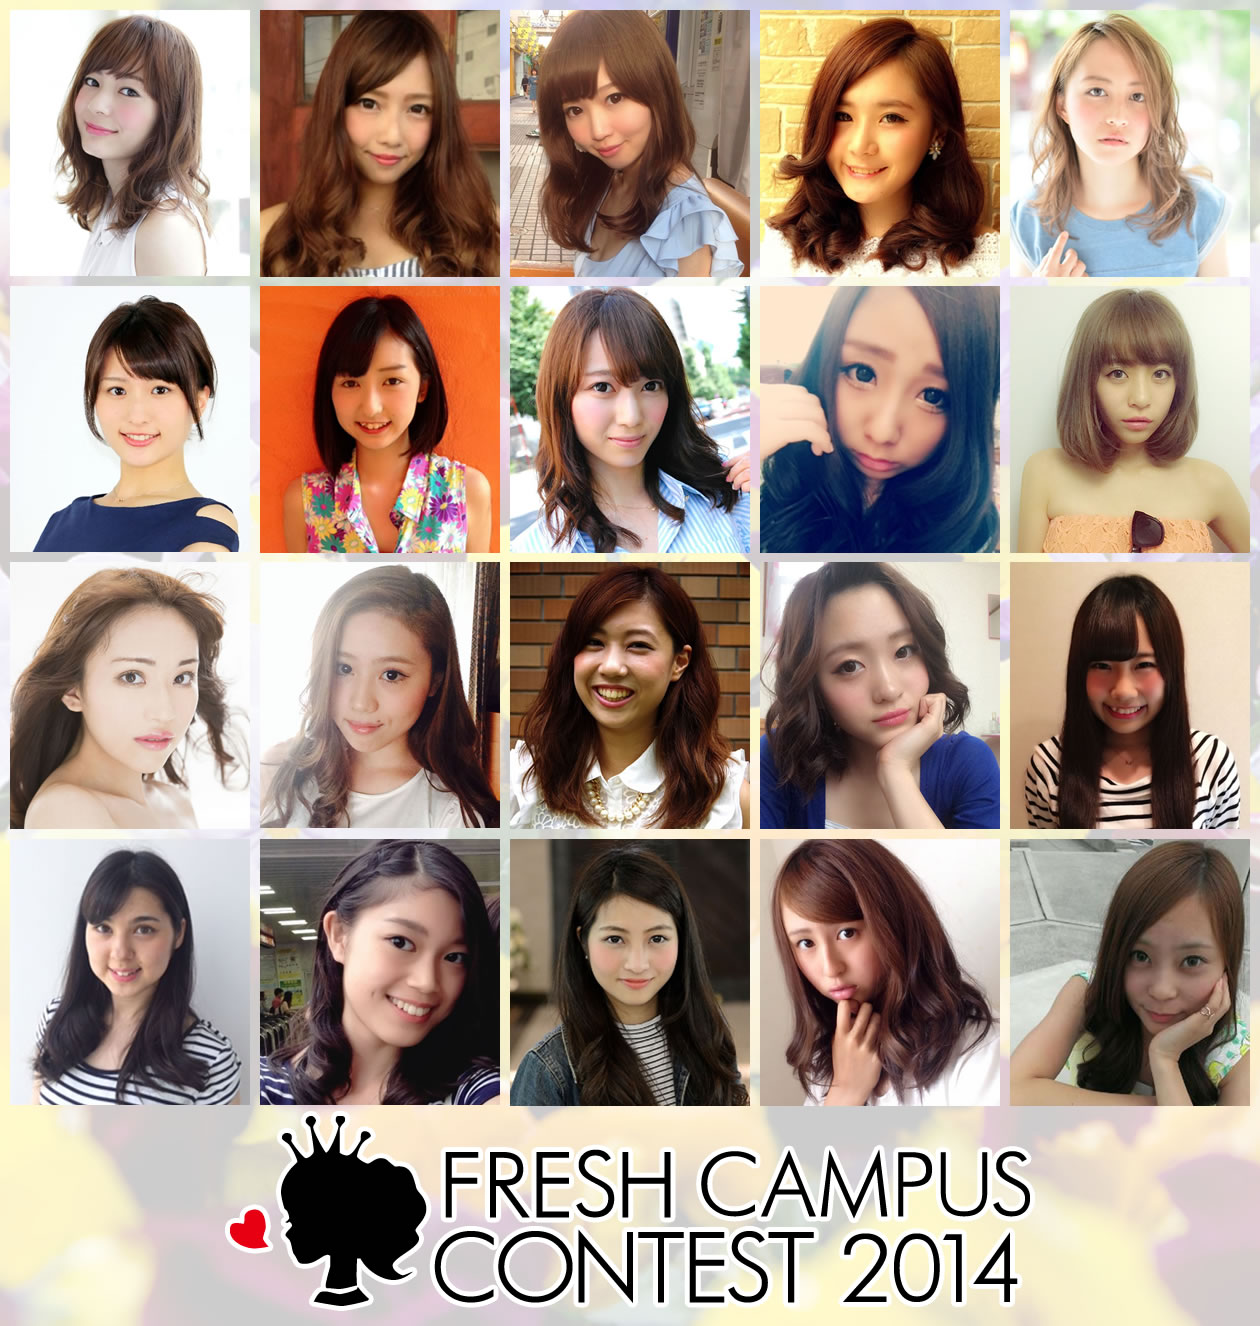 Fresh Campus Contest フレッシュキャンパスコンテスト 14 が大激戦 株式会社エイジ エンタテインメントのプレスリリース